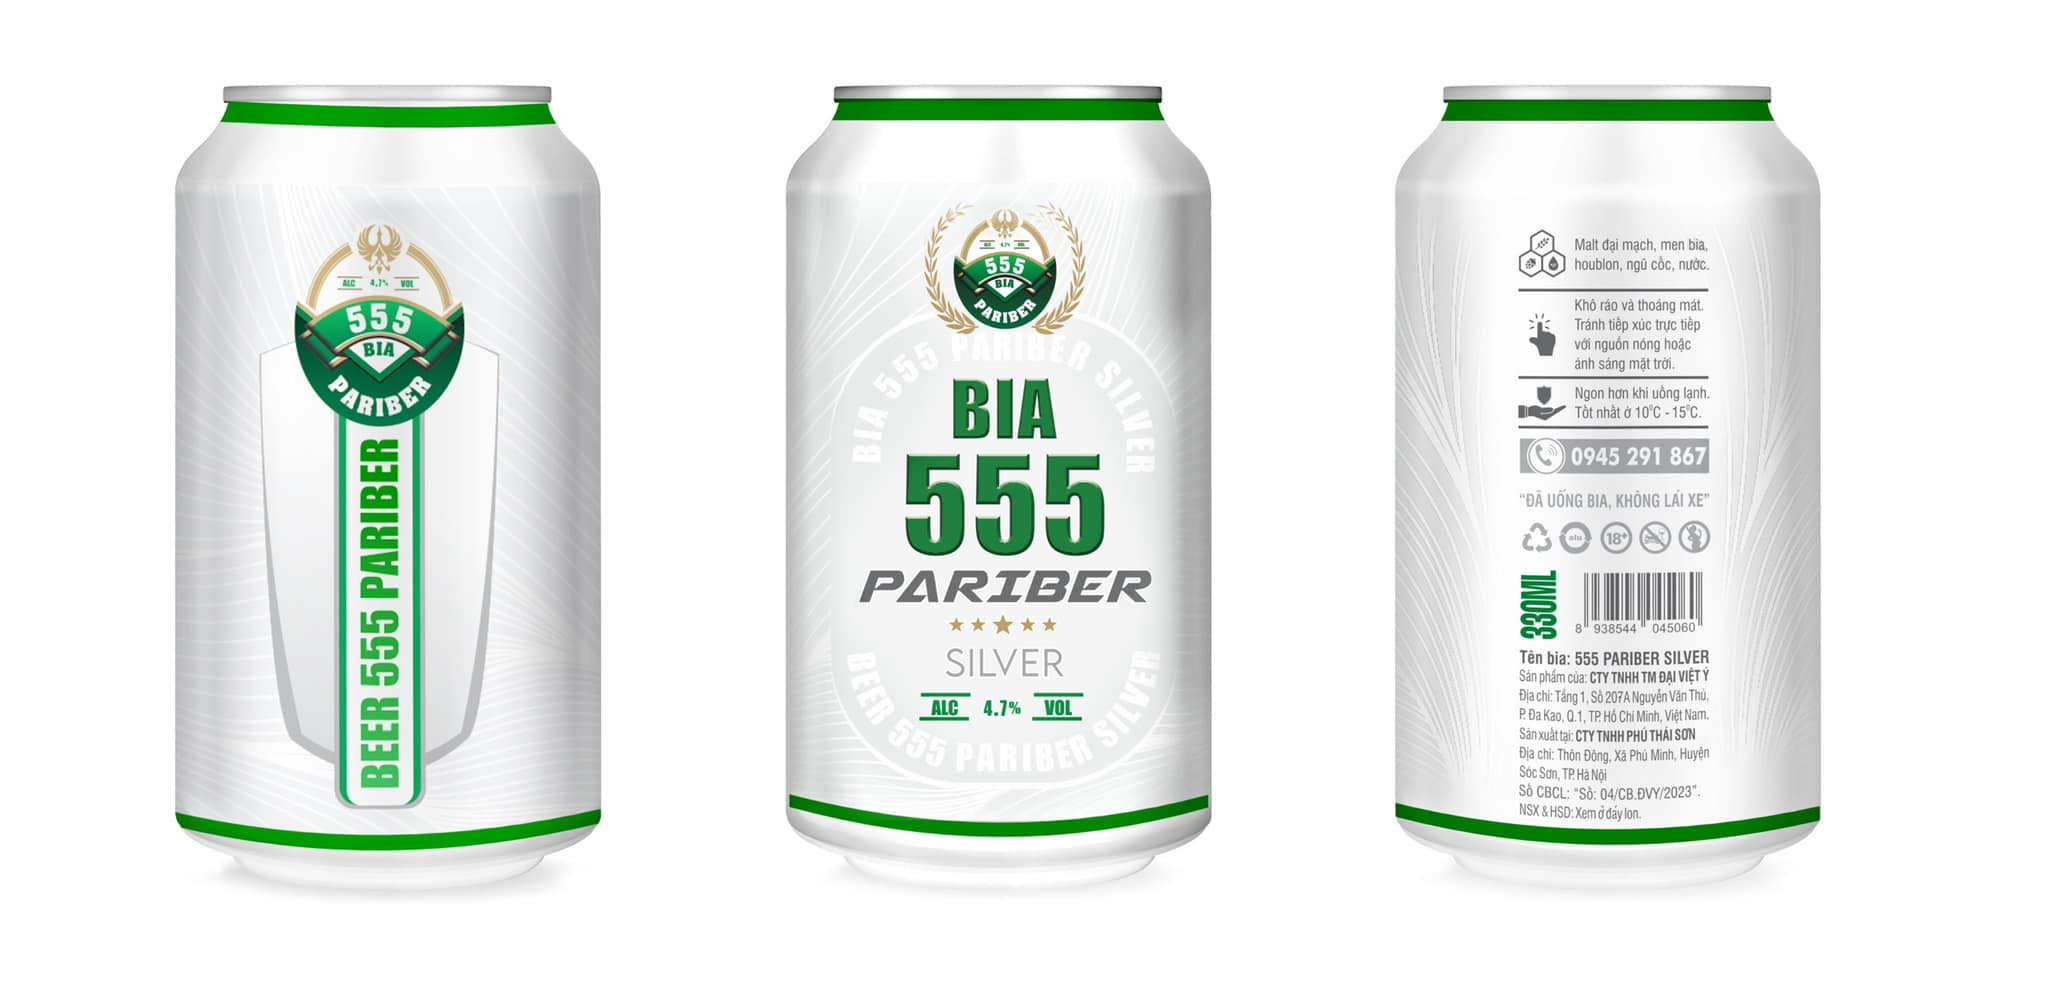 Bia 555 Pariber được xem là loại cao cấp hơn của dòng Lager xanh lon lùn